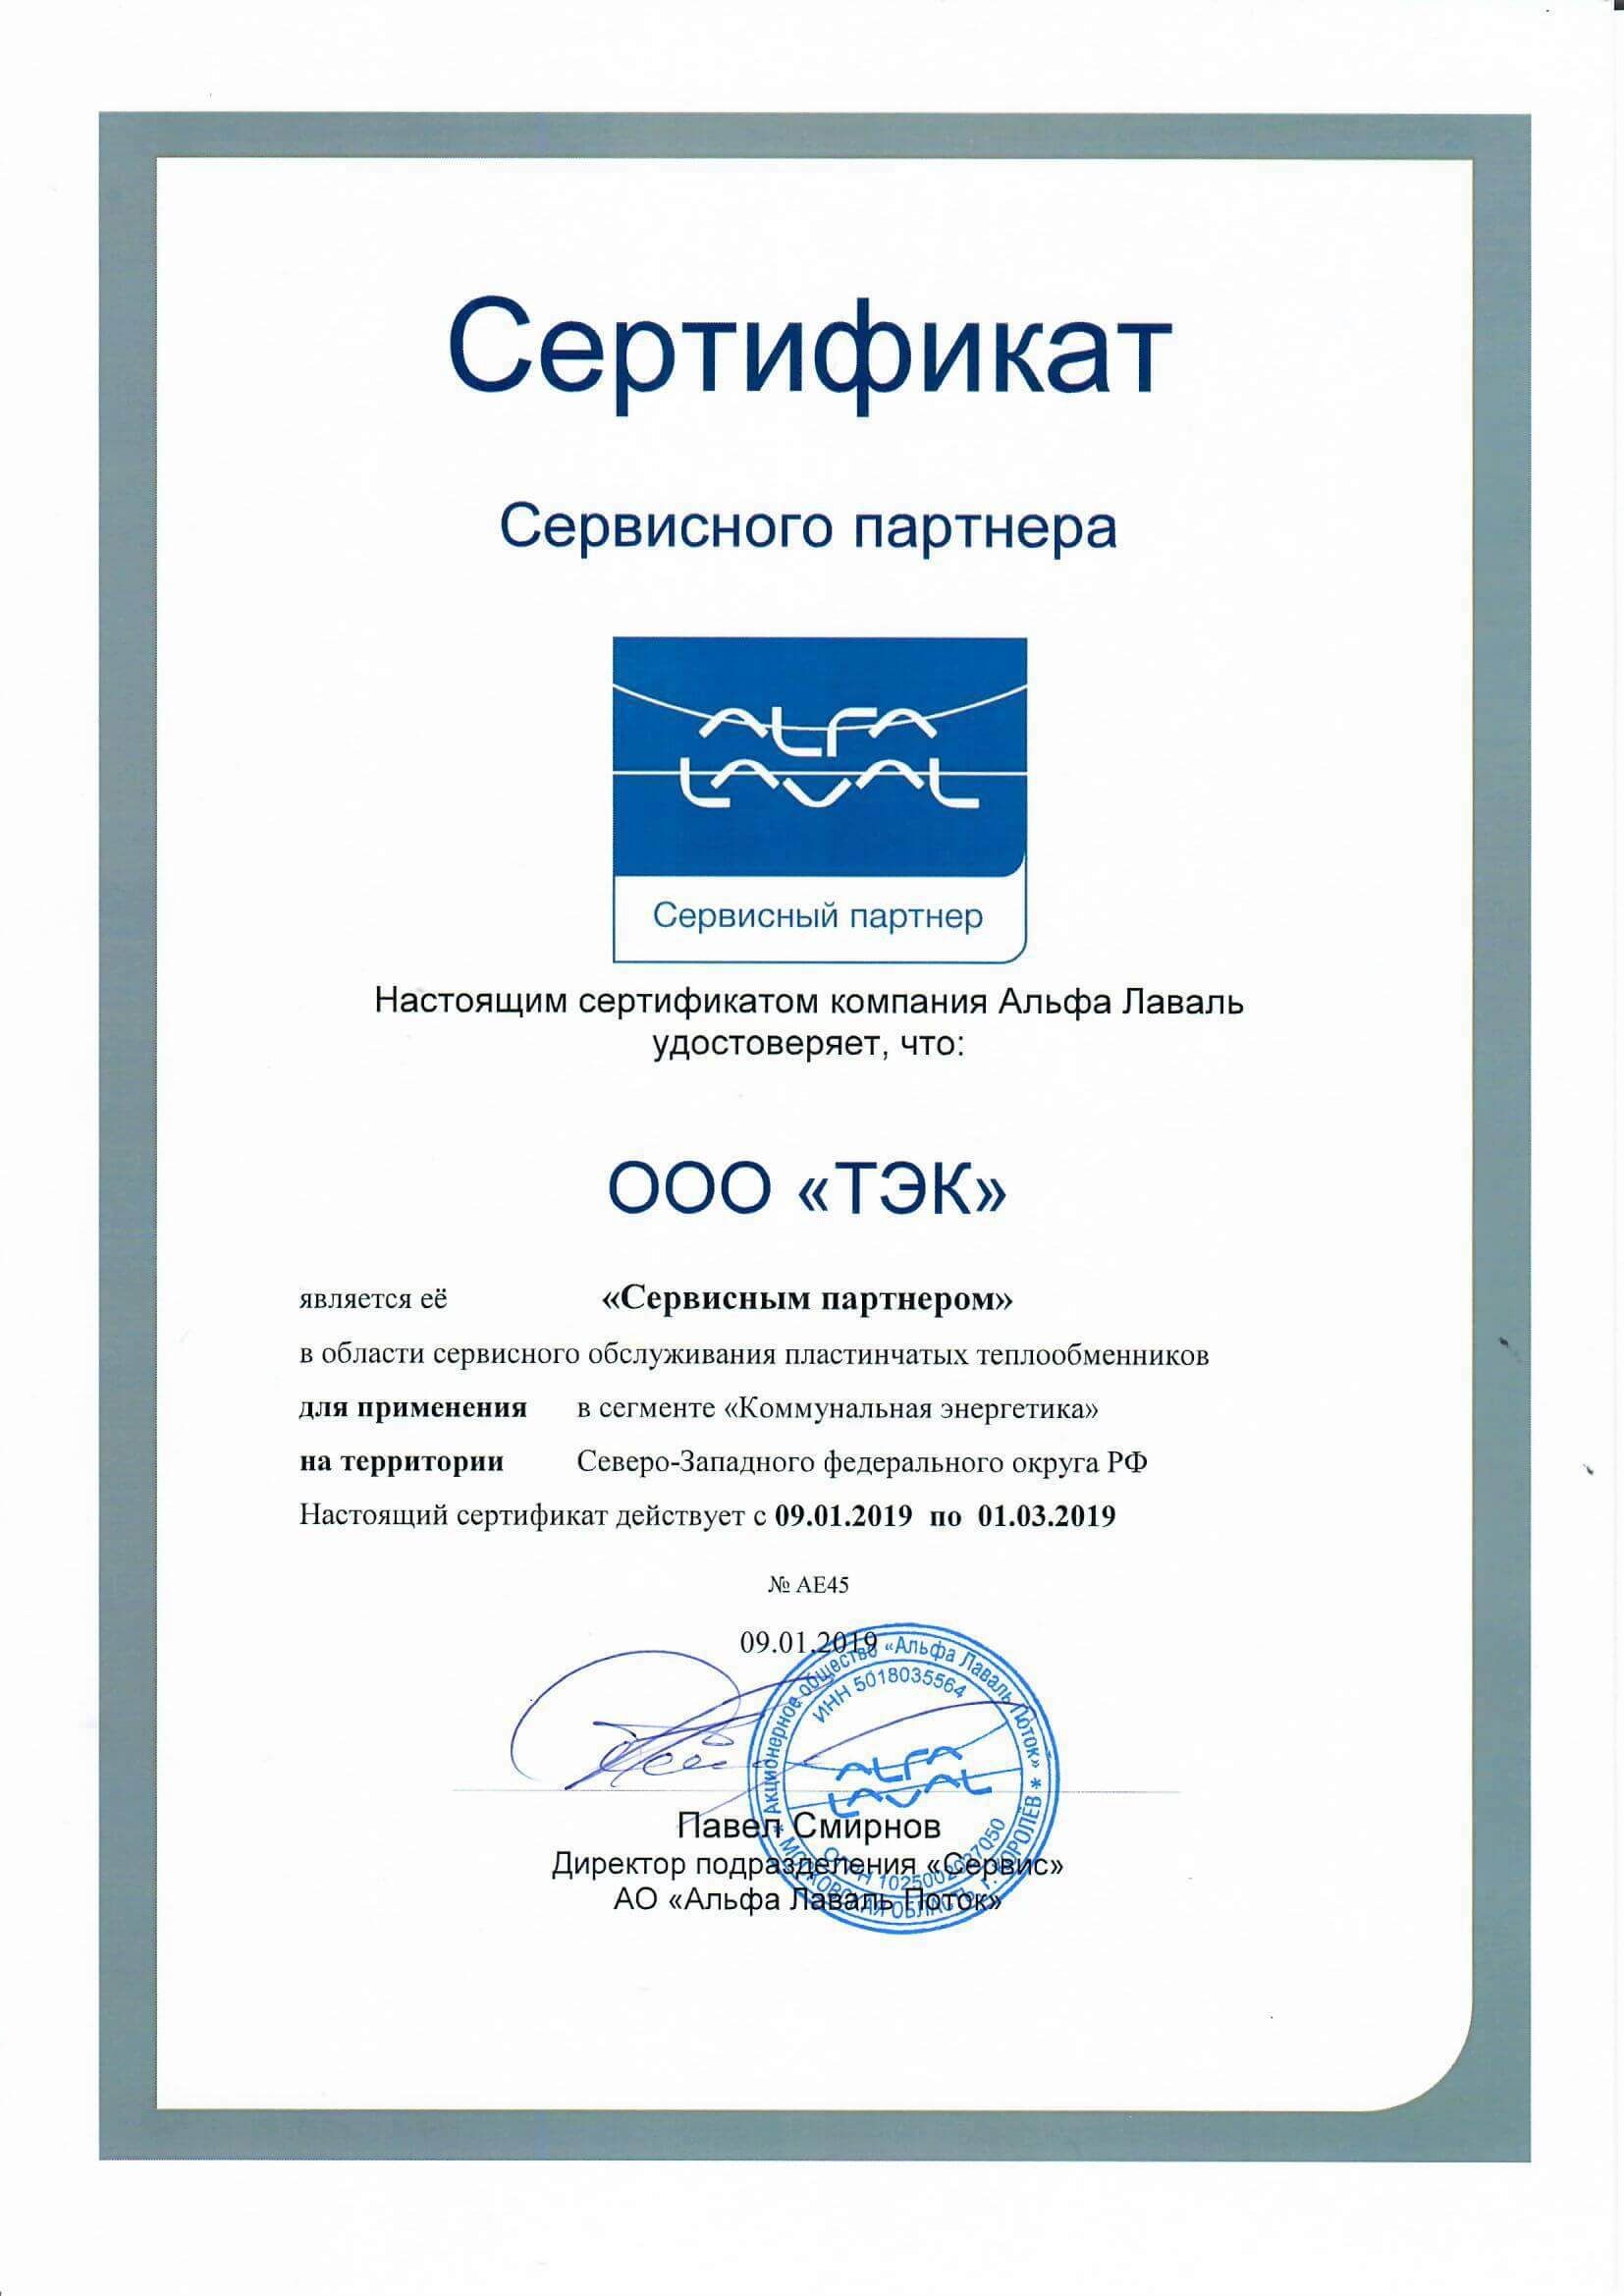 Сертификат партнера фирмы Альфа-Лаваль